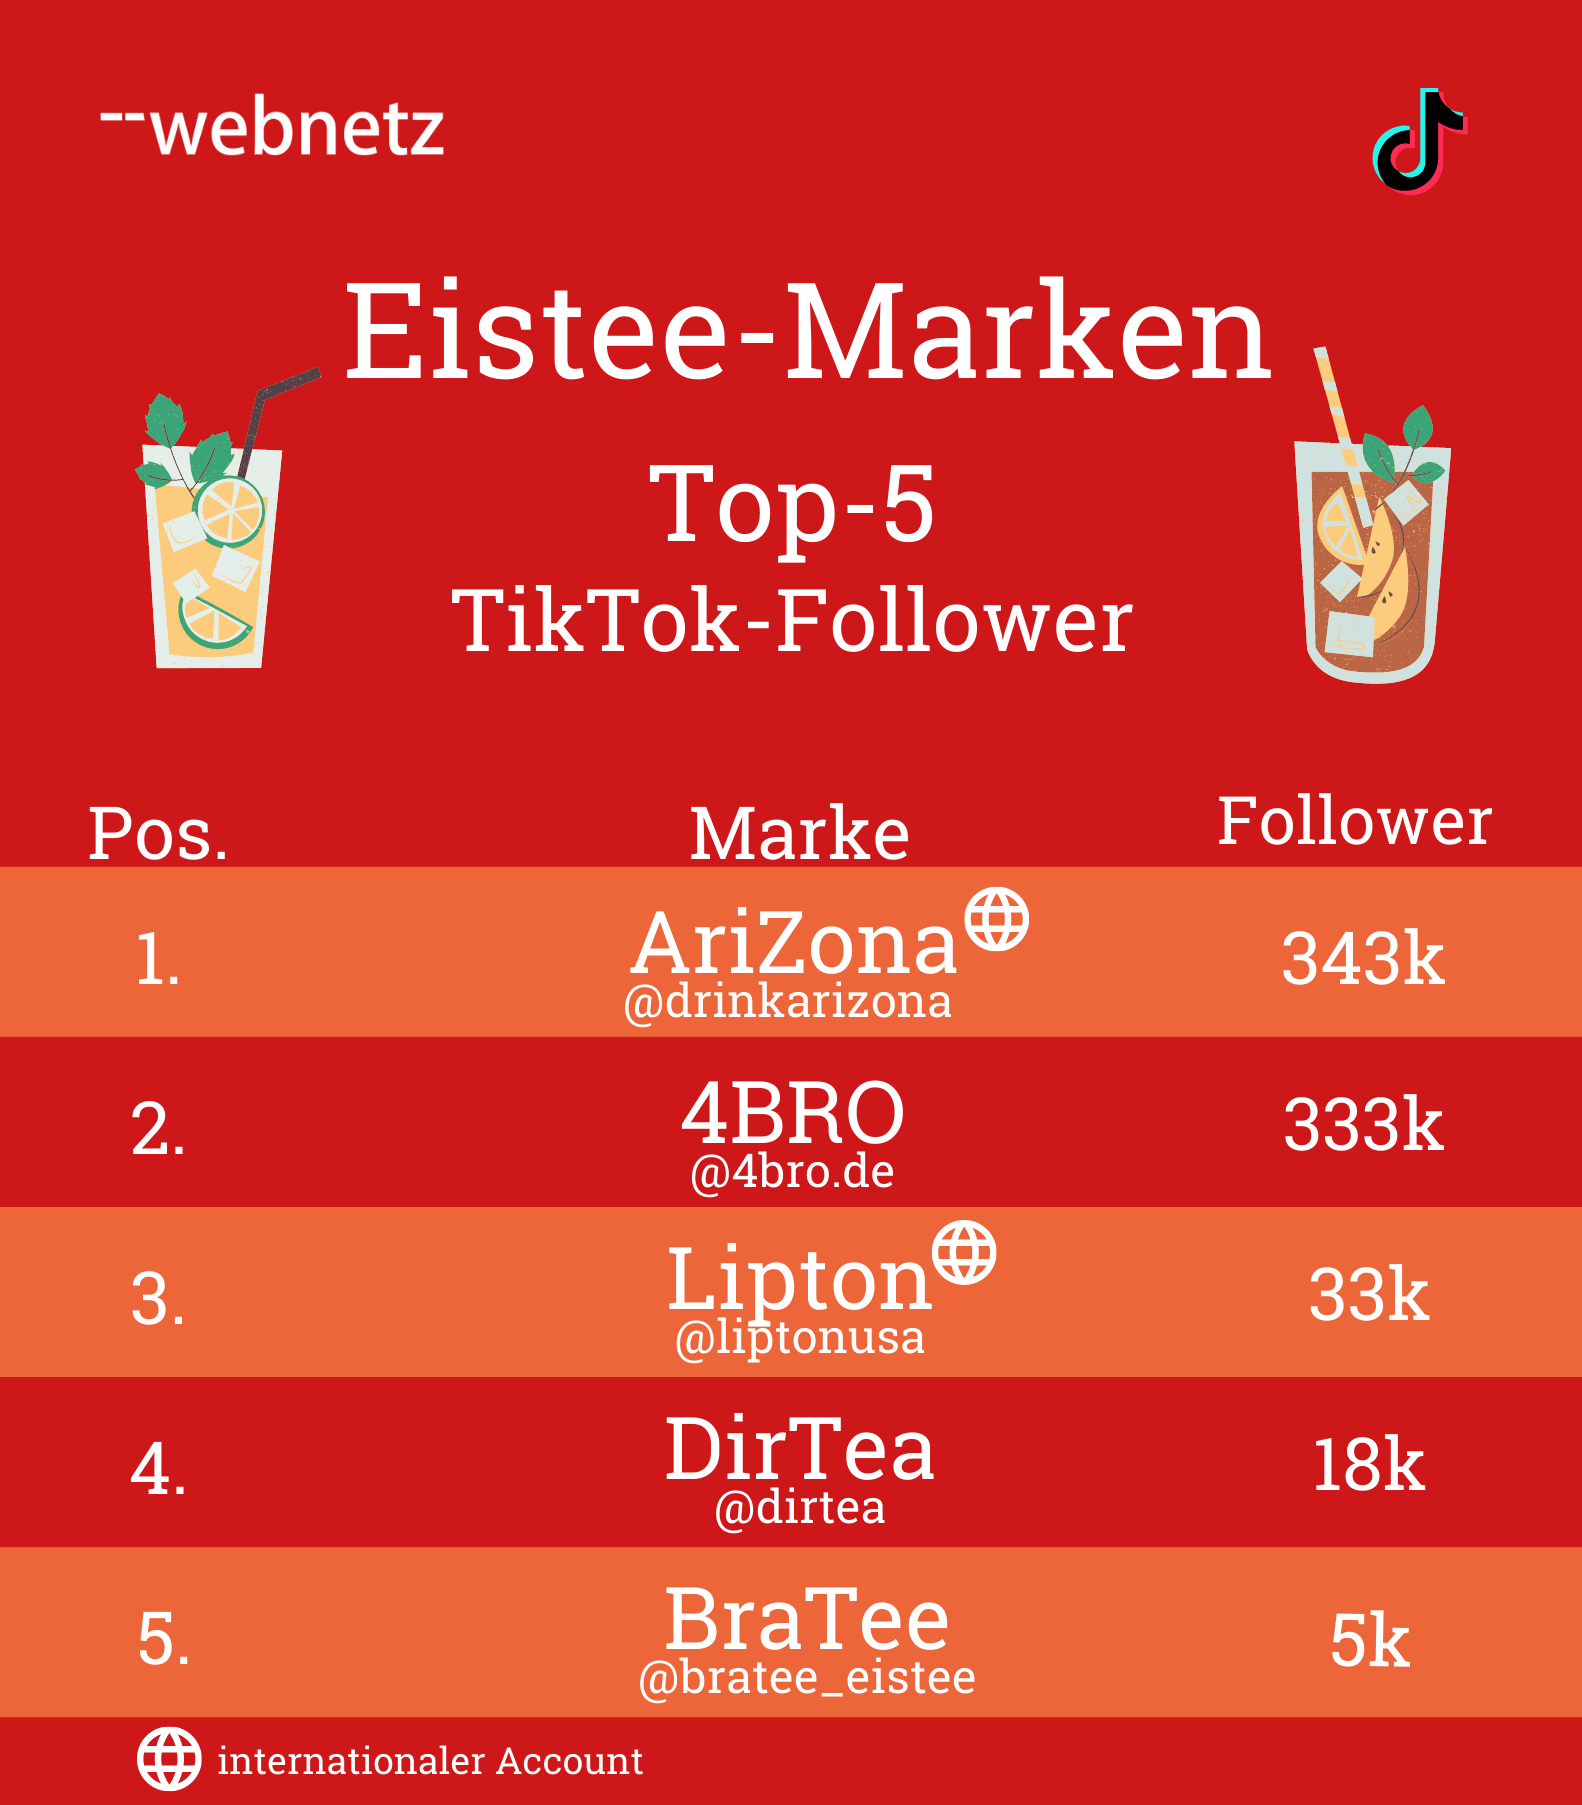 Top-5 TikTok-Follower der Eistee-Marken